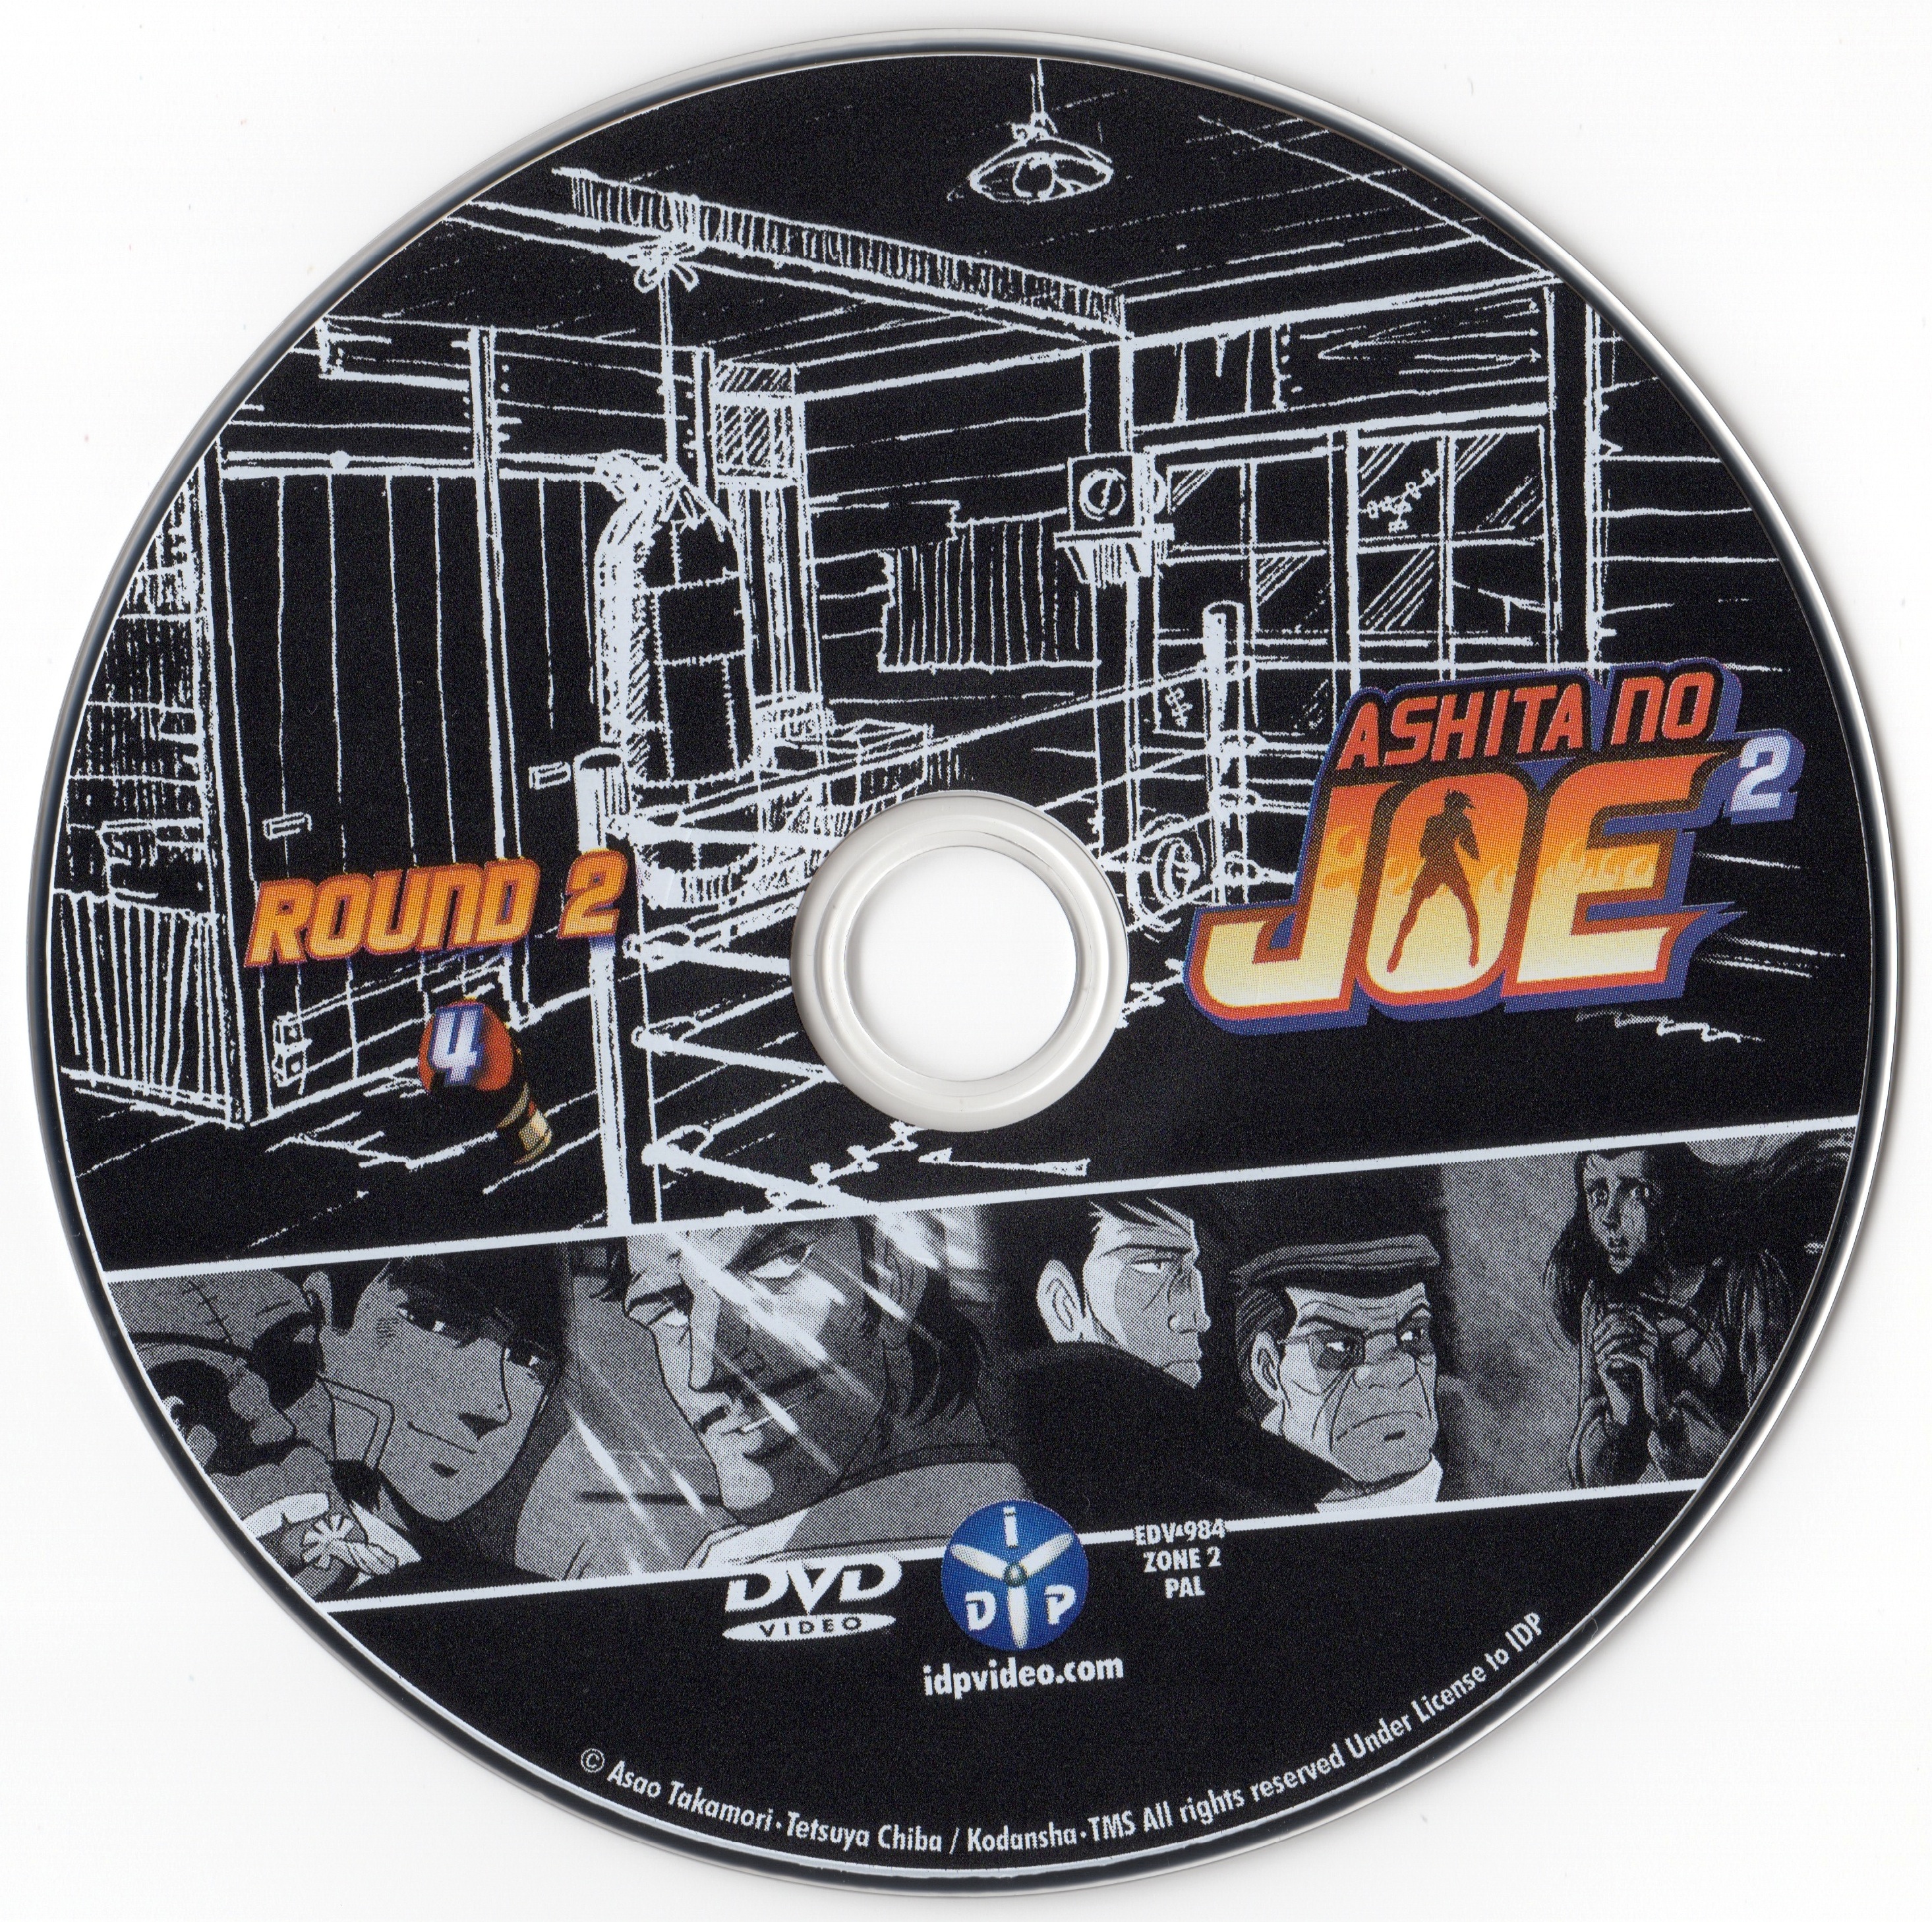 Ashita No Joe 2 Round 1 DVD 4